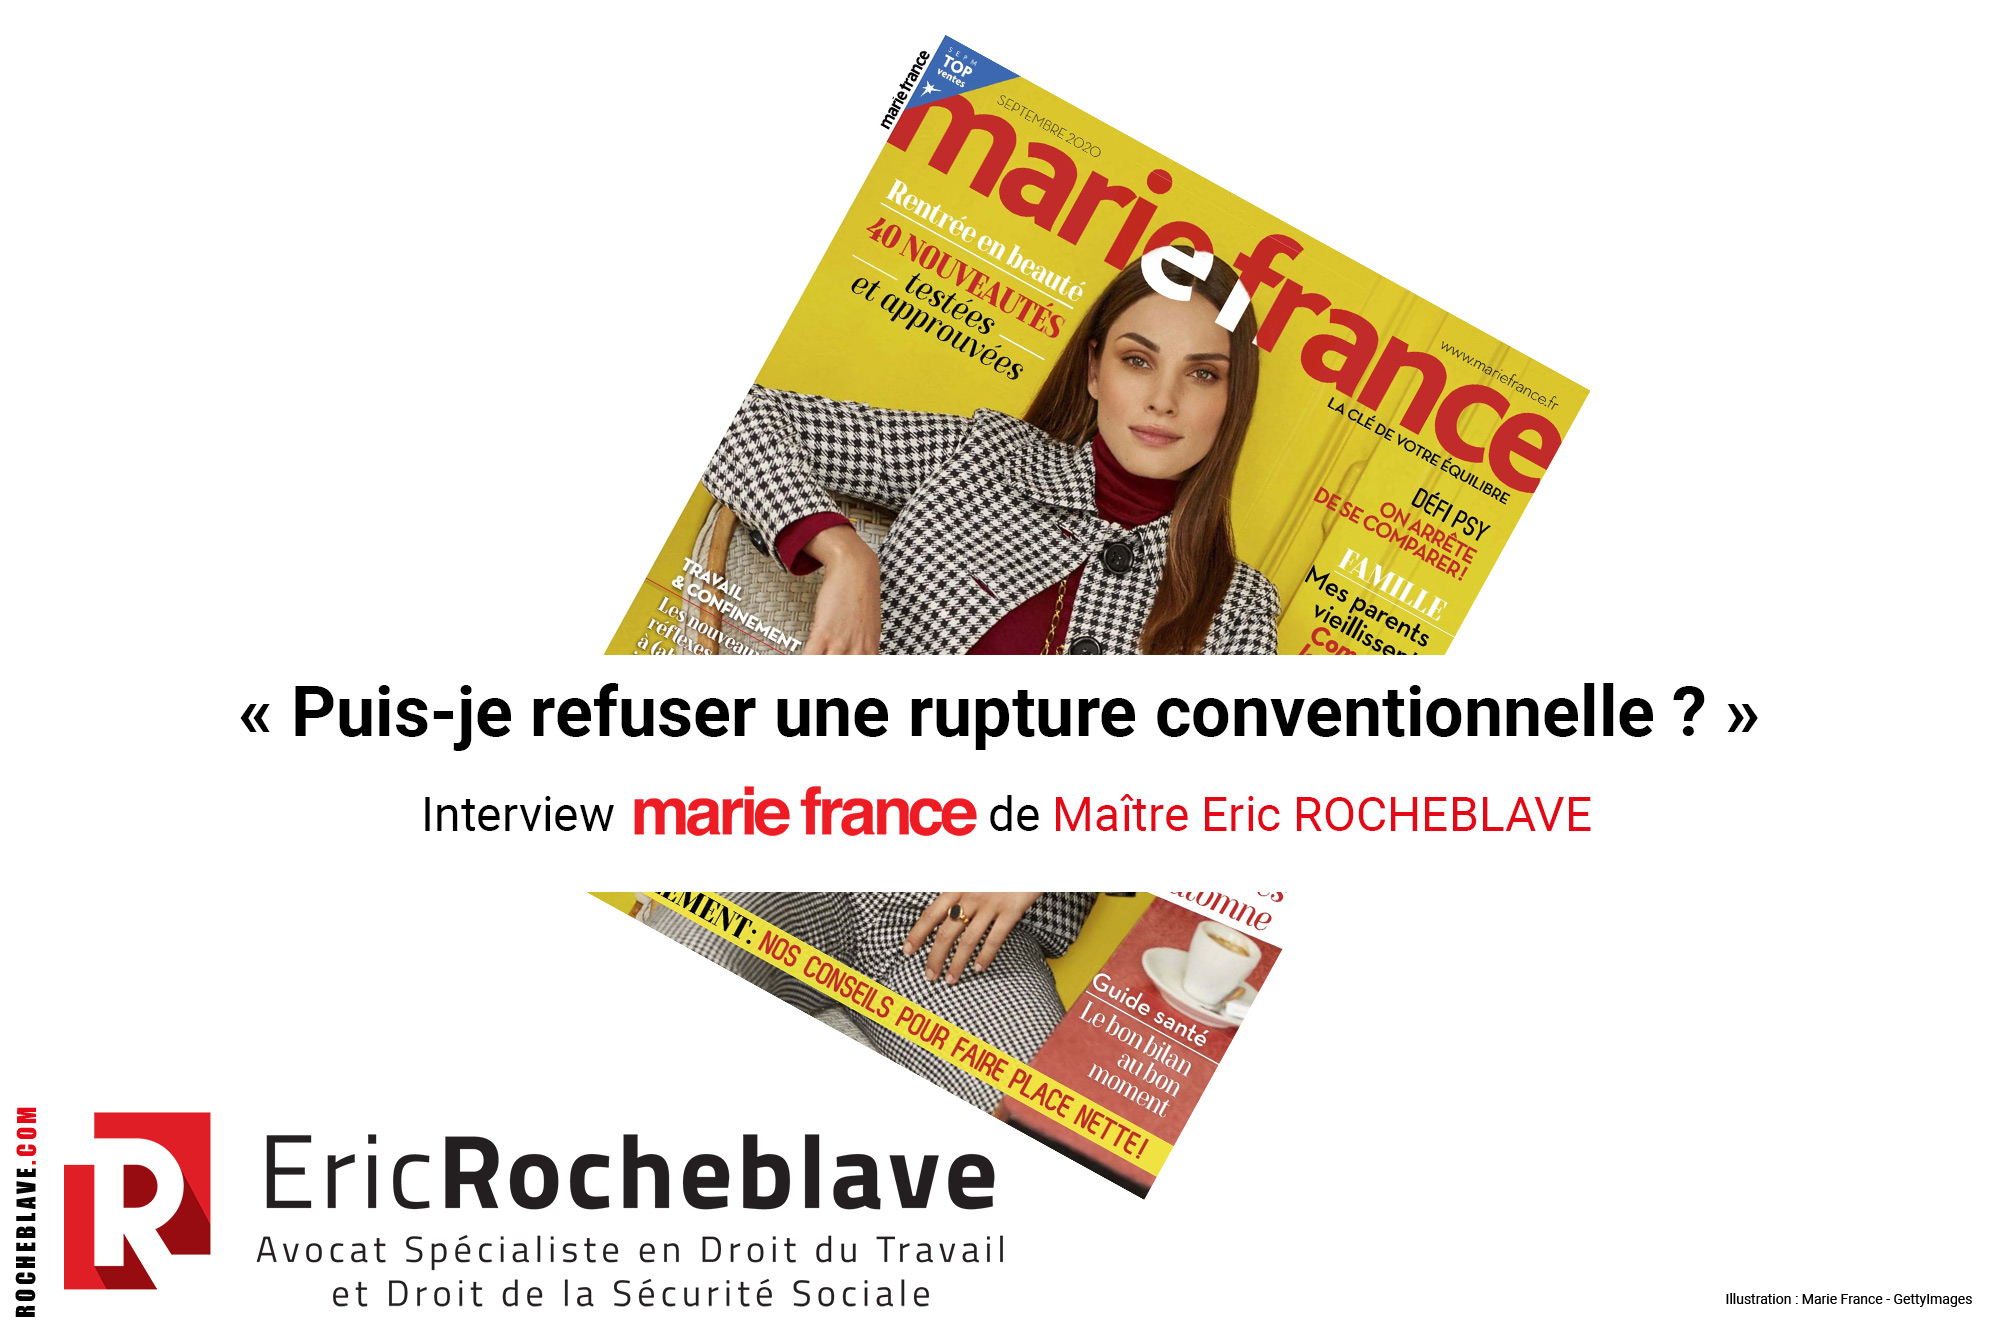 « Puis-je refuser une rupture conventionnelle ? » ​Interview marie france de Maître Eric ROCHEBLAVE